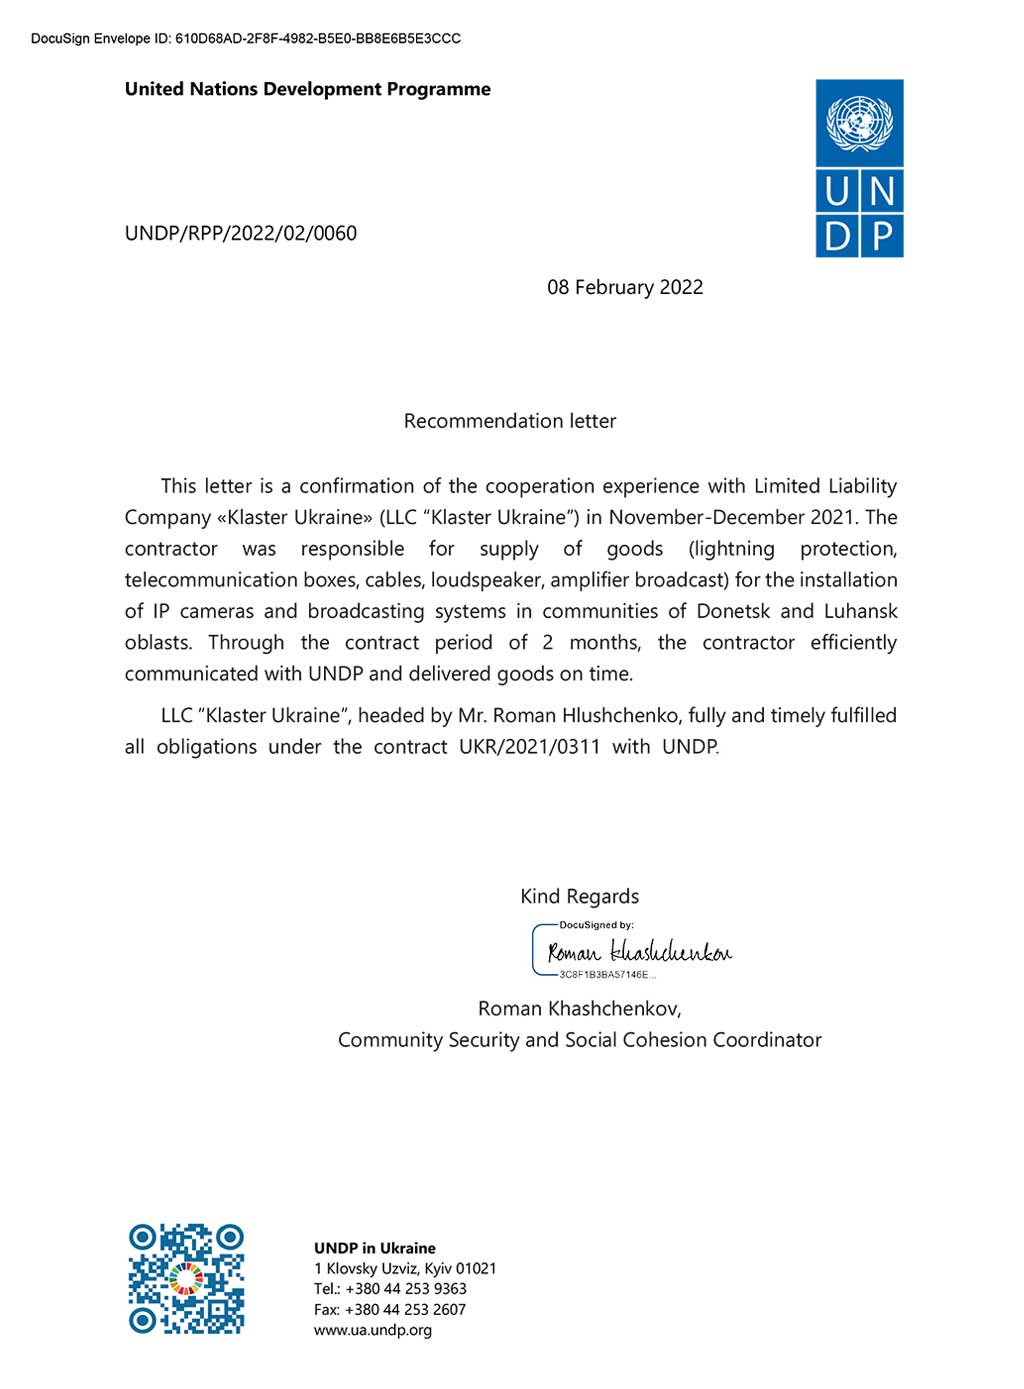 Рекомендательное письмо от ПРООН в Украине